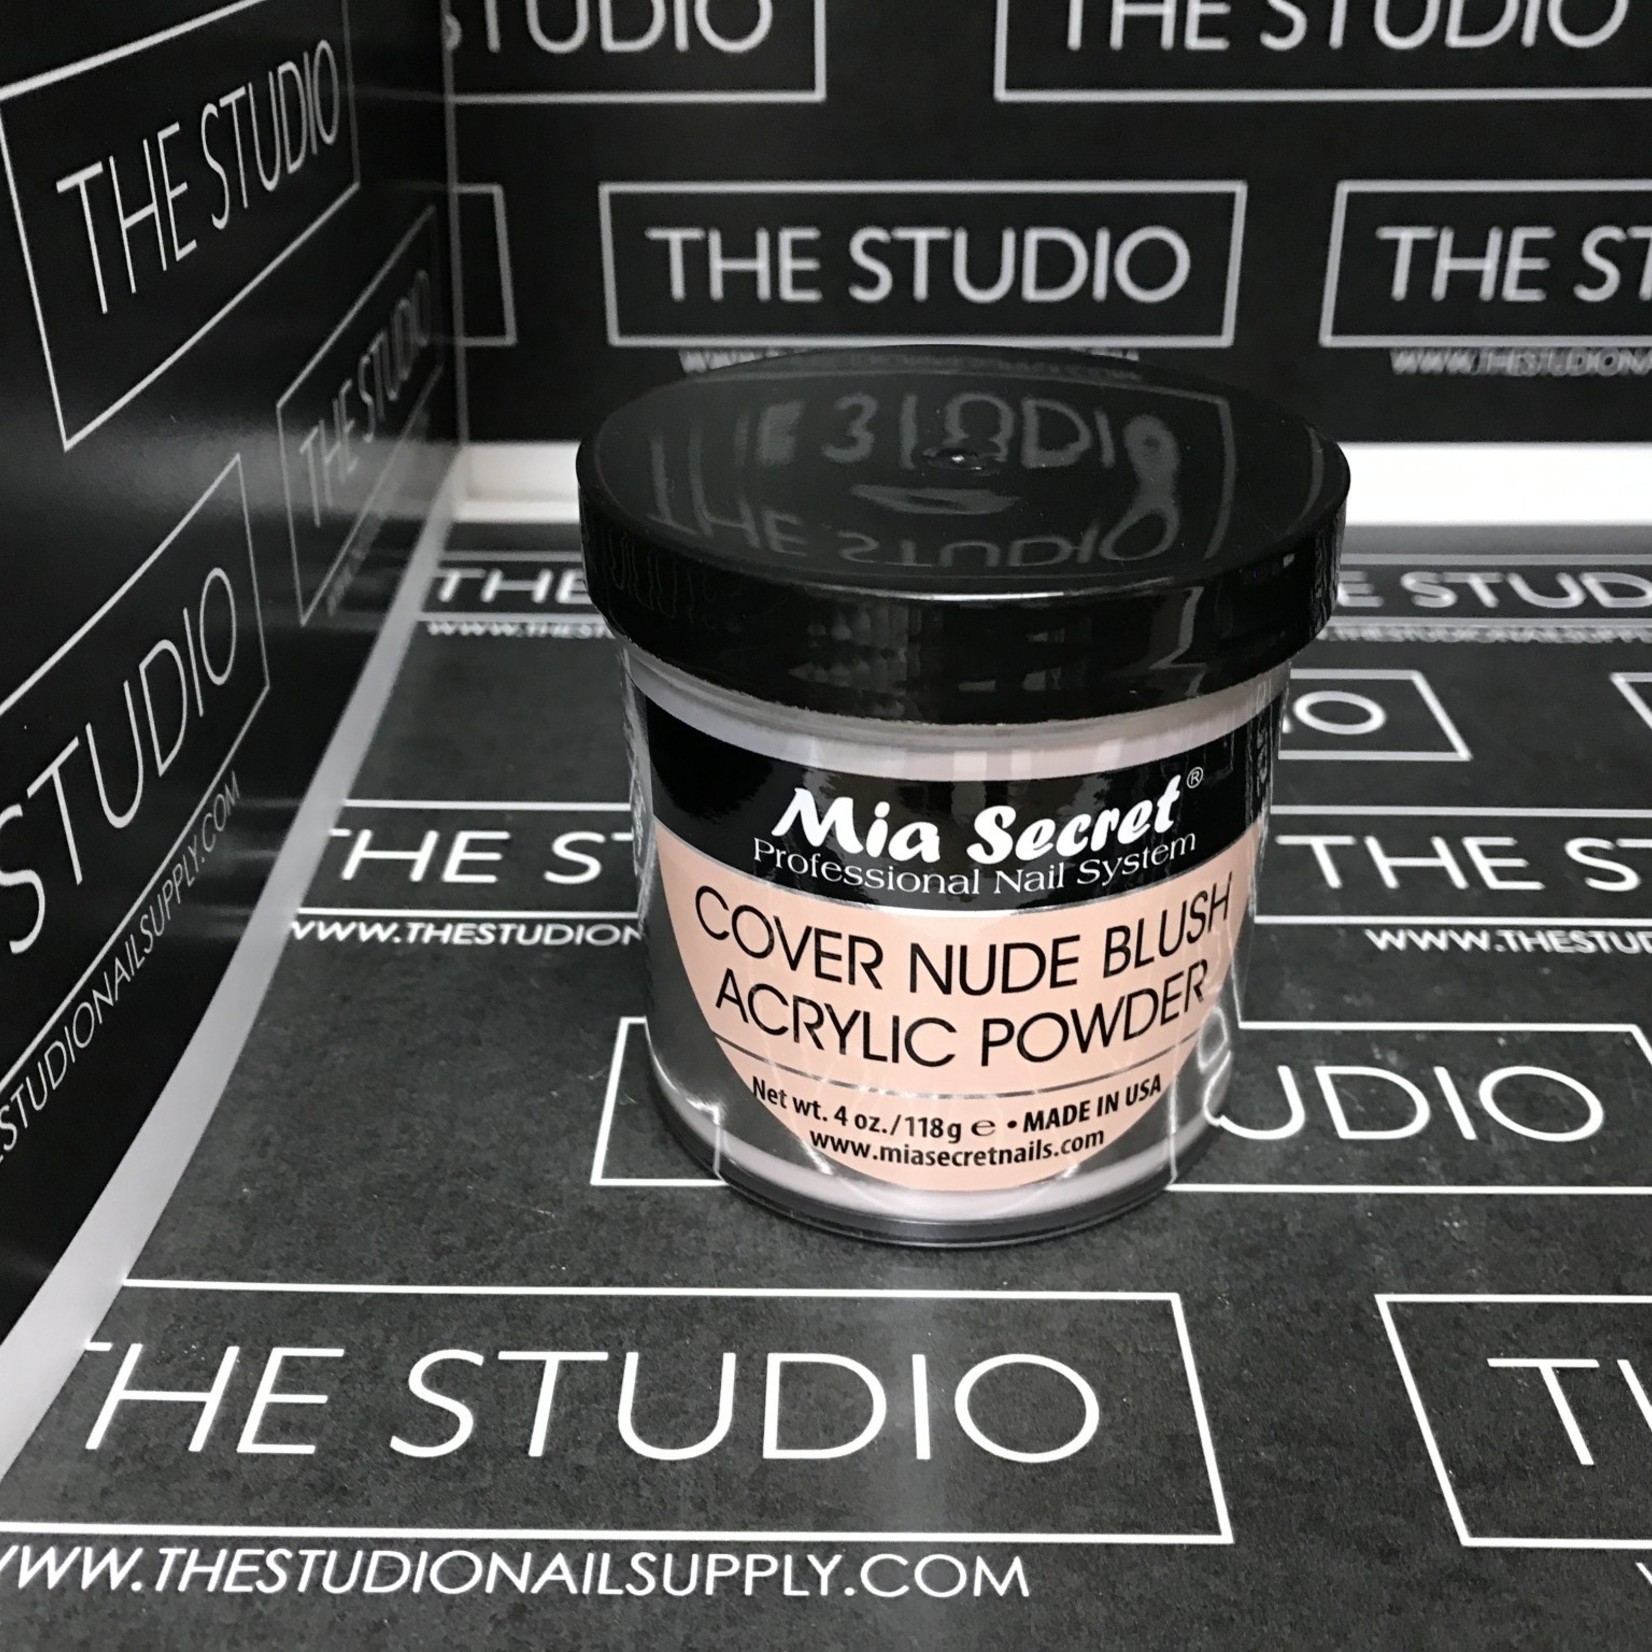 Mia Secret Mia Secret - Acrylic Powder - Cover Nude Blush -